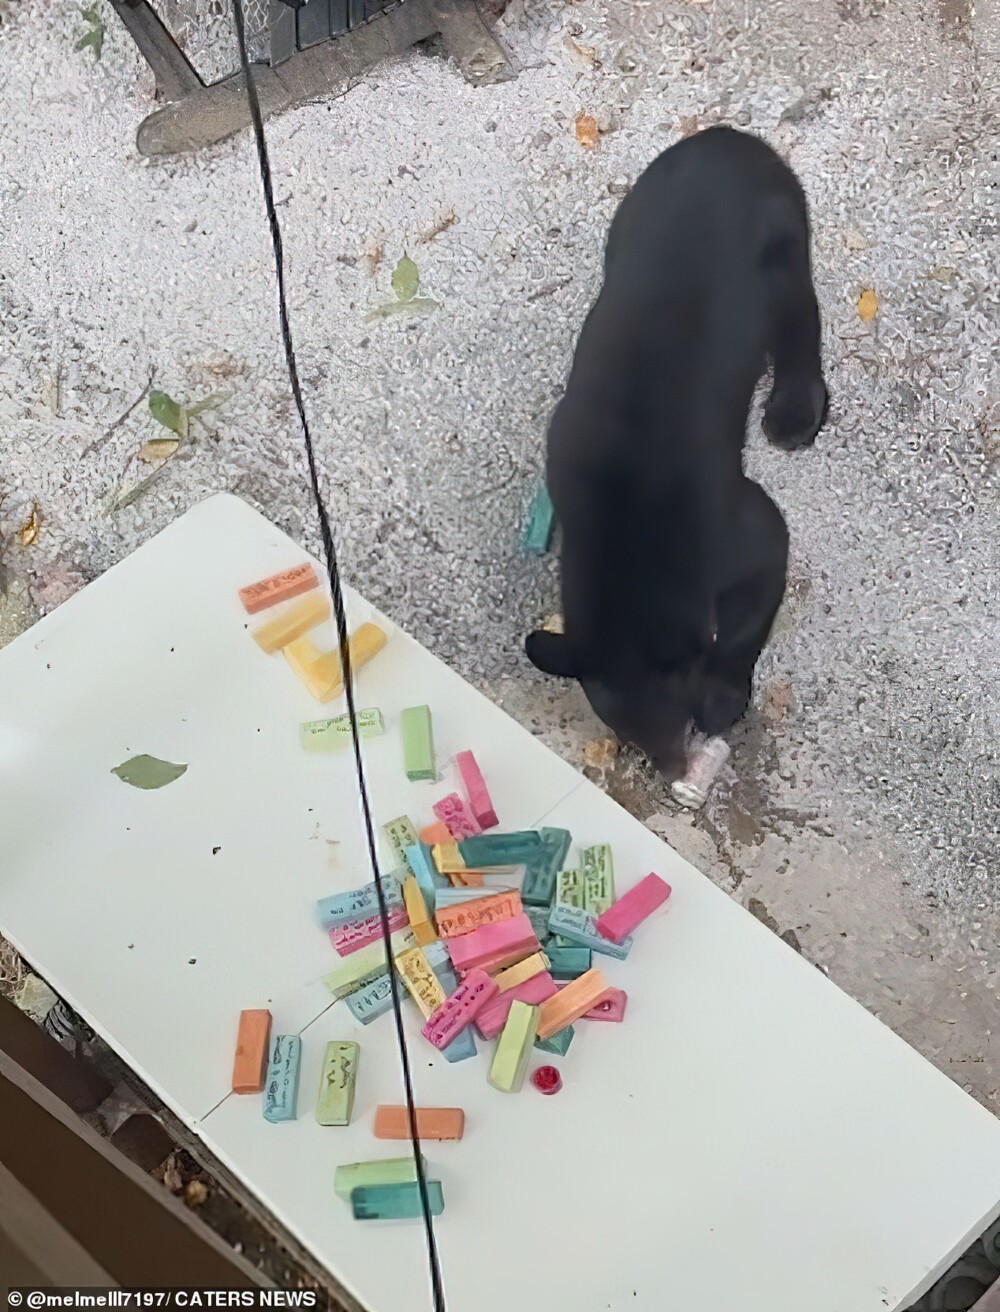 Пикник плюшевых мишек: медведи пришли в гости на барбекю